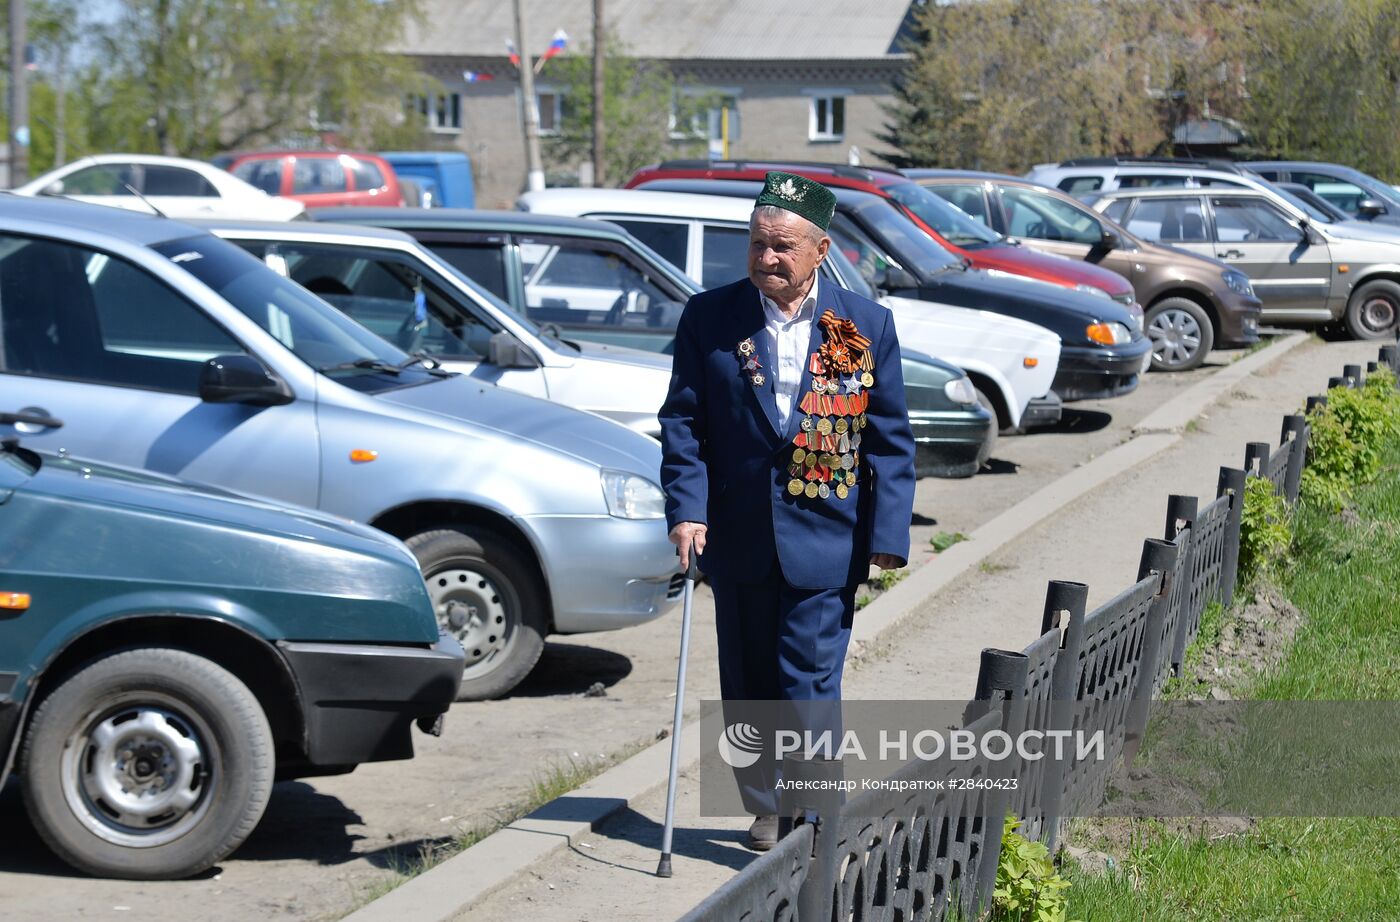 Ветеран ВОВ Сунагат Якупов из Челябинской области